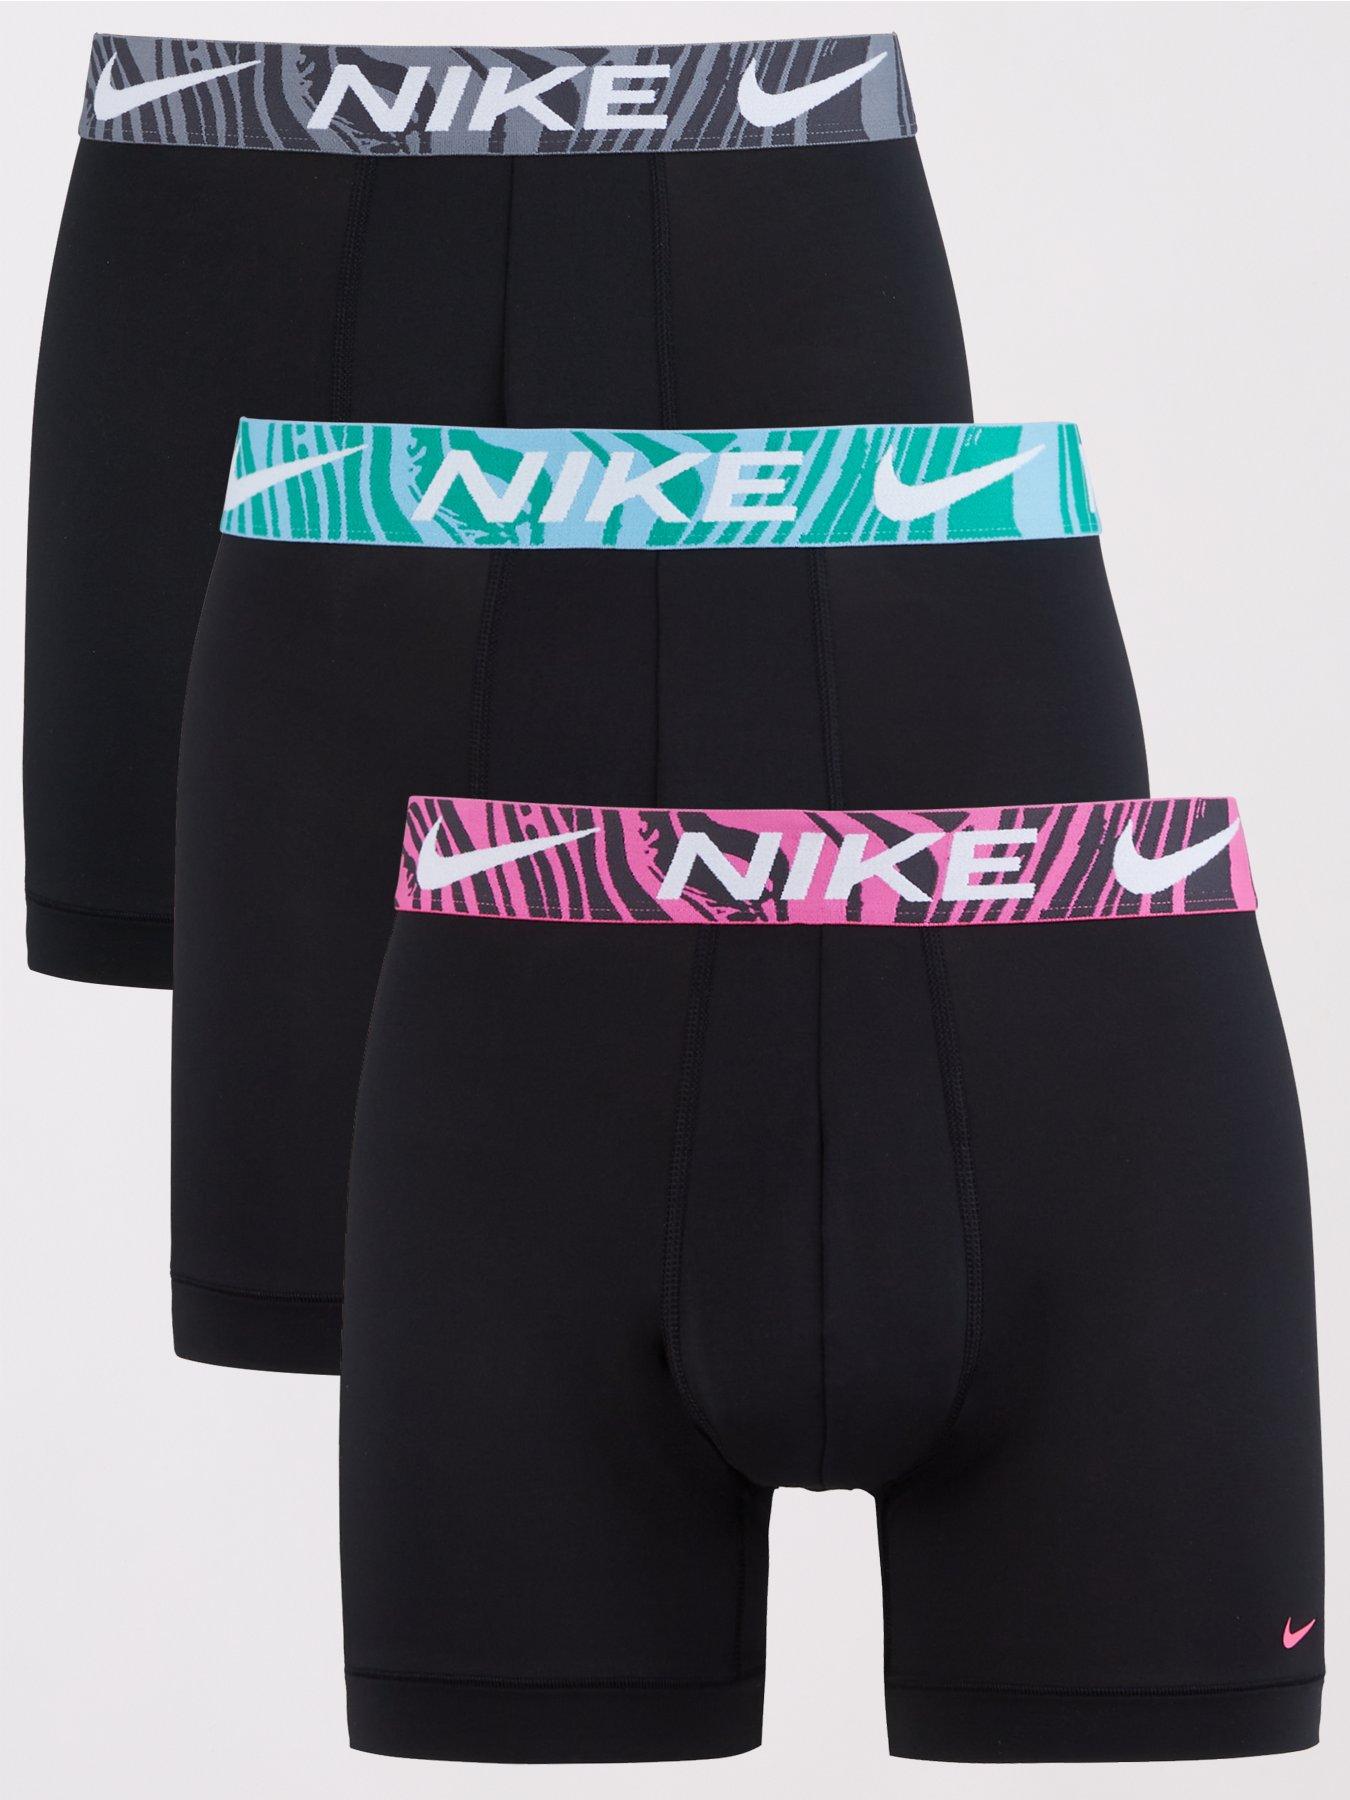 NIKE Underwear Brief 3pk - Briefs